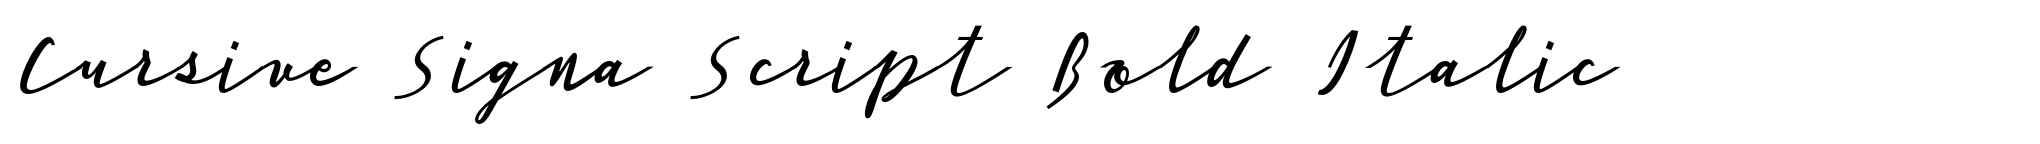 Cursive Signa Script Bold Italic image